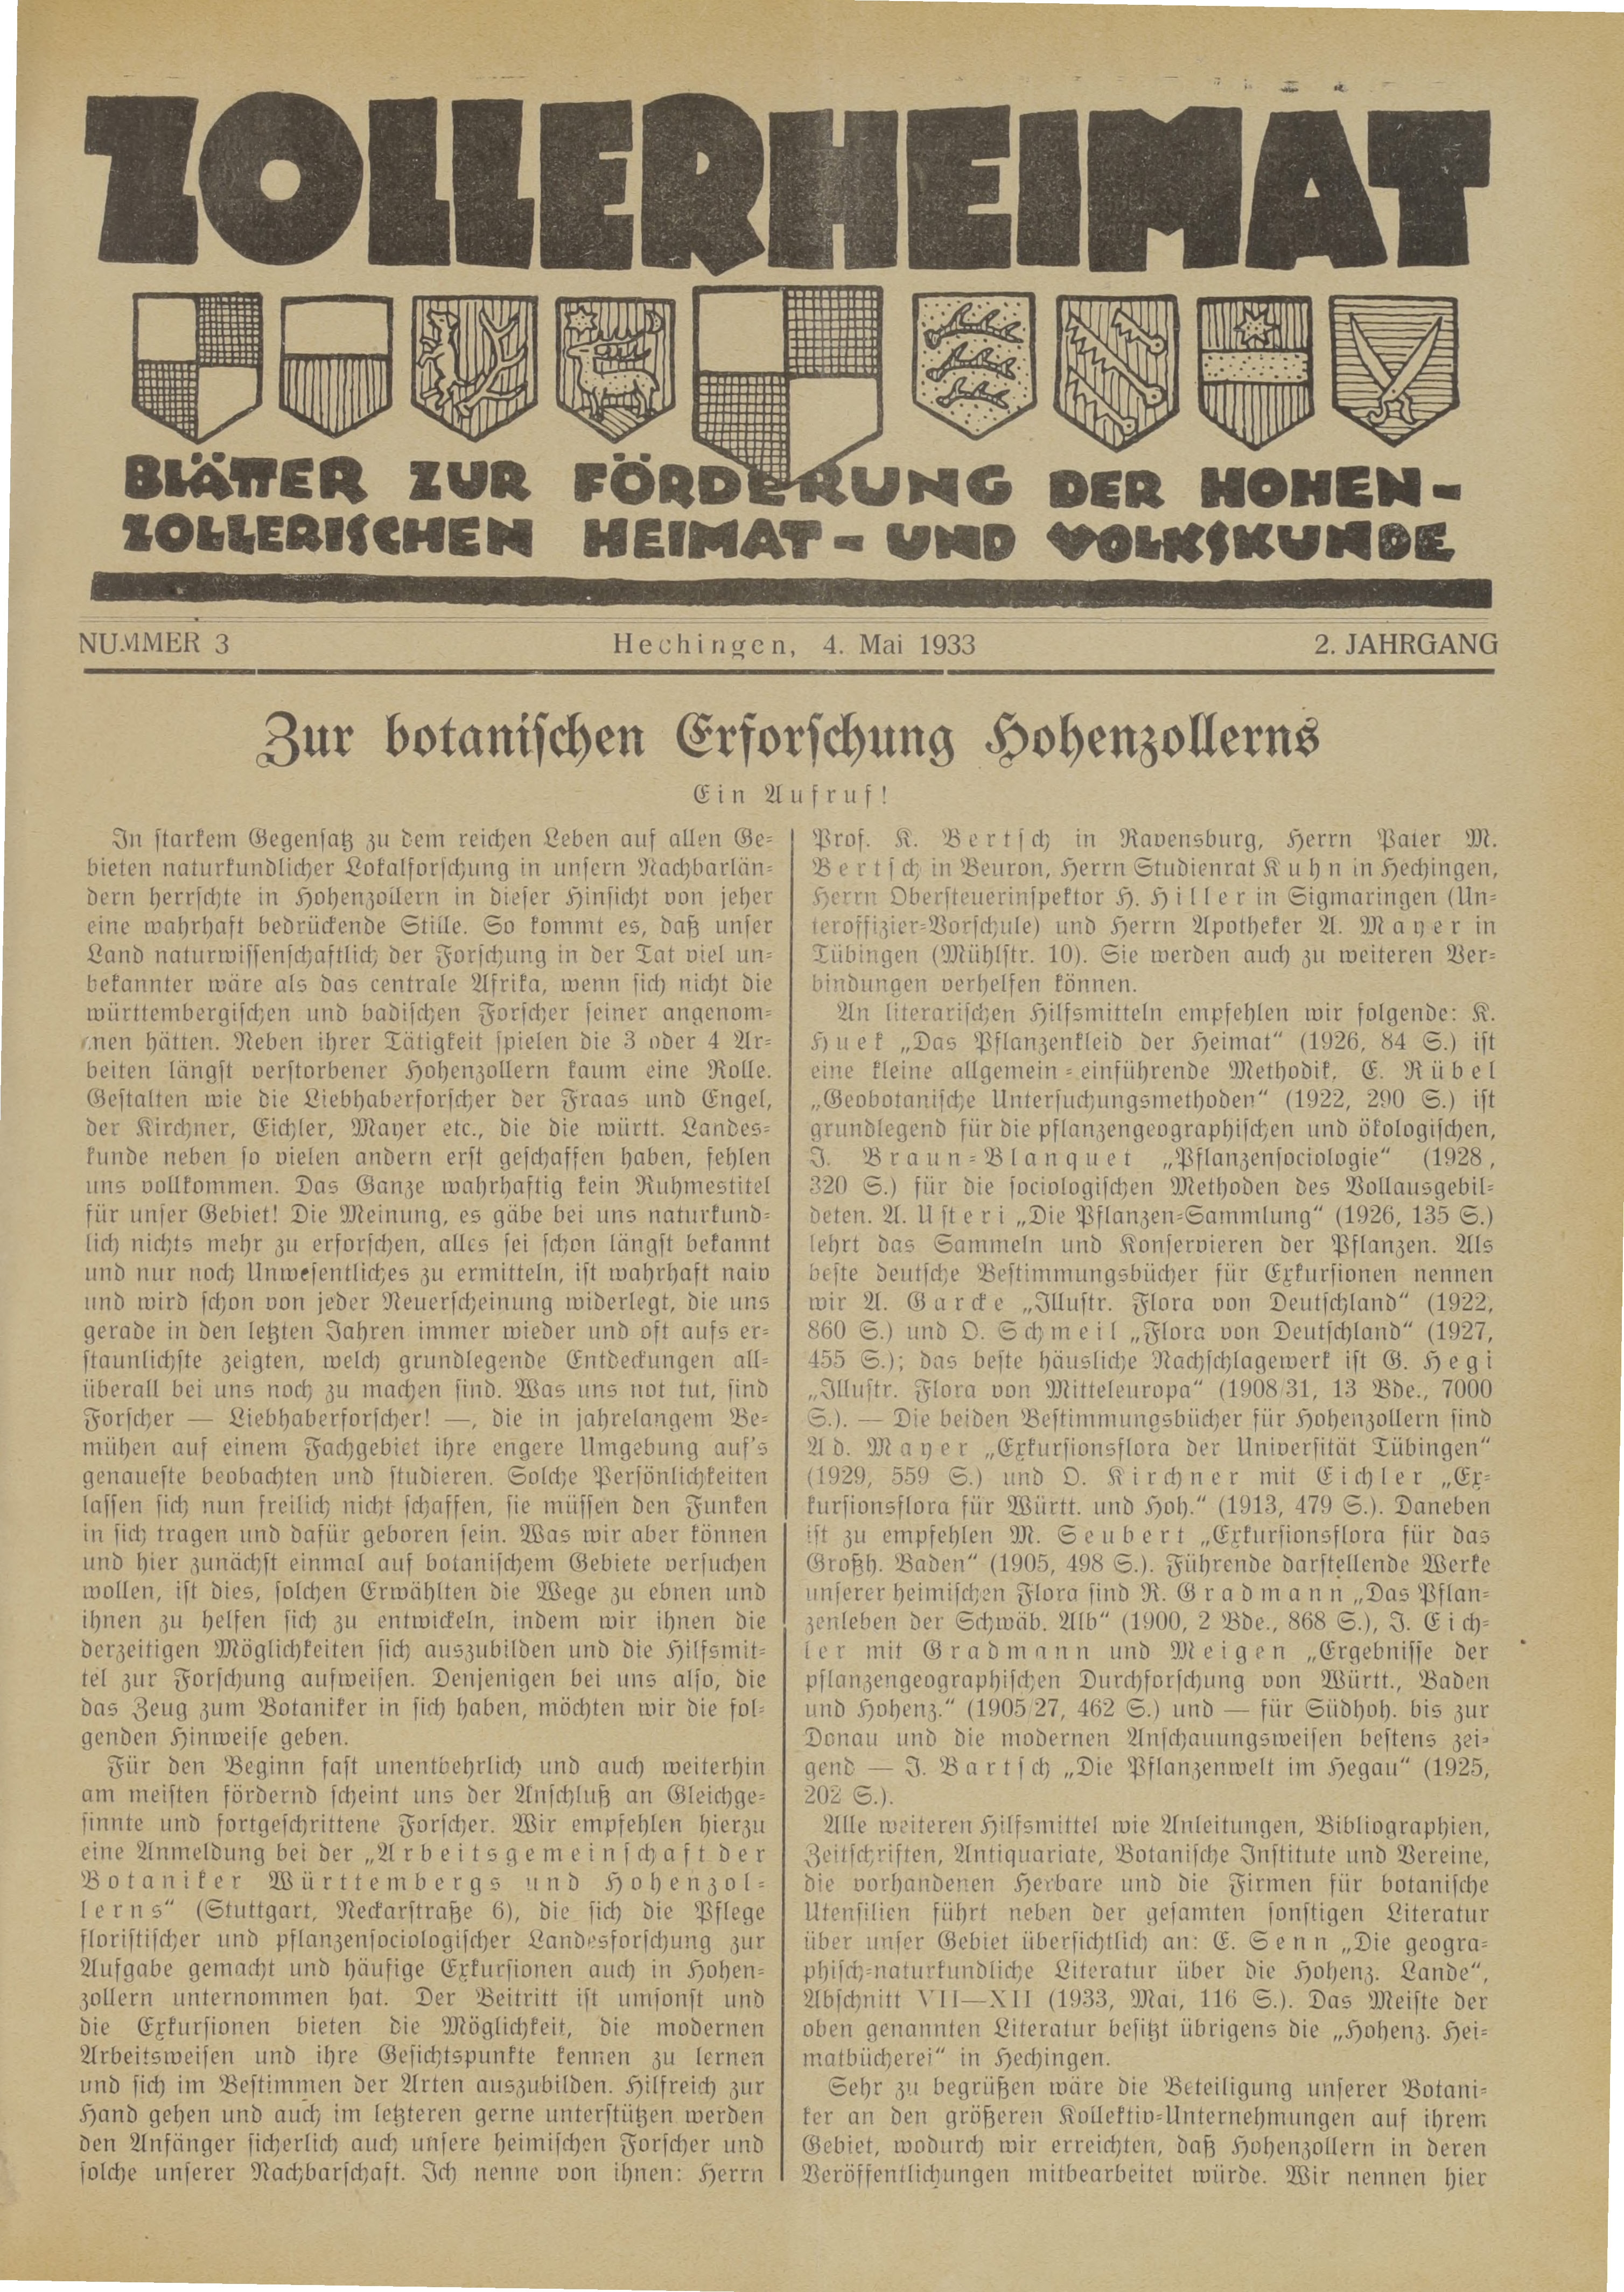                     Ansehen Bd. 2 Nr. 3 (1933): Zollerheimat
                